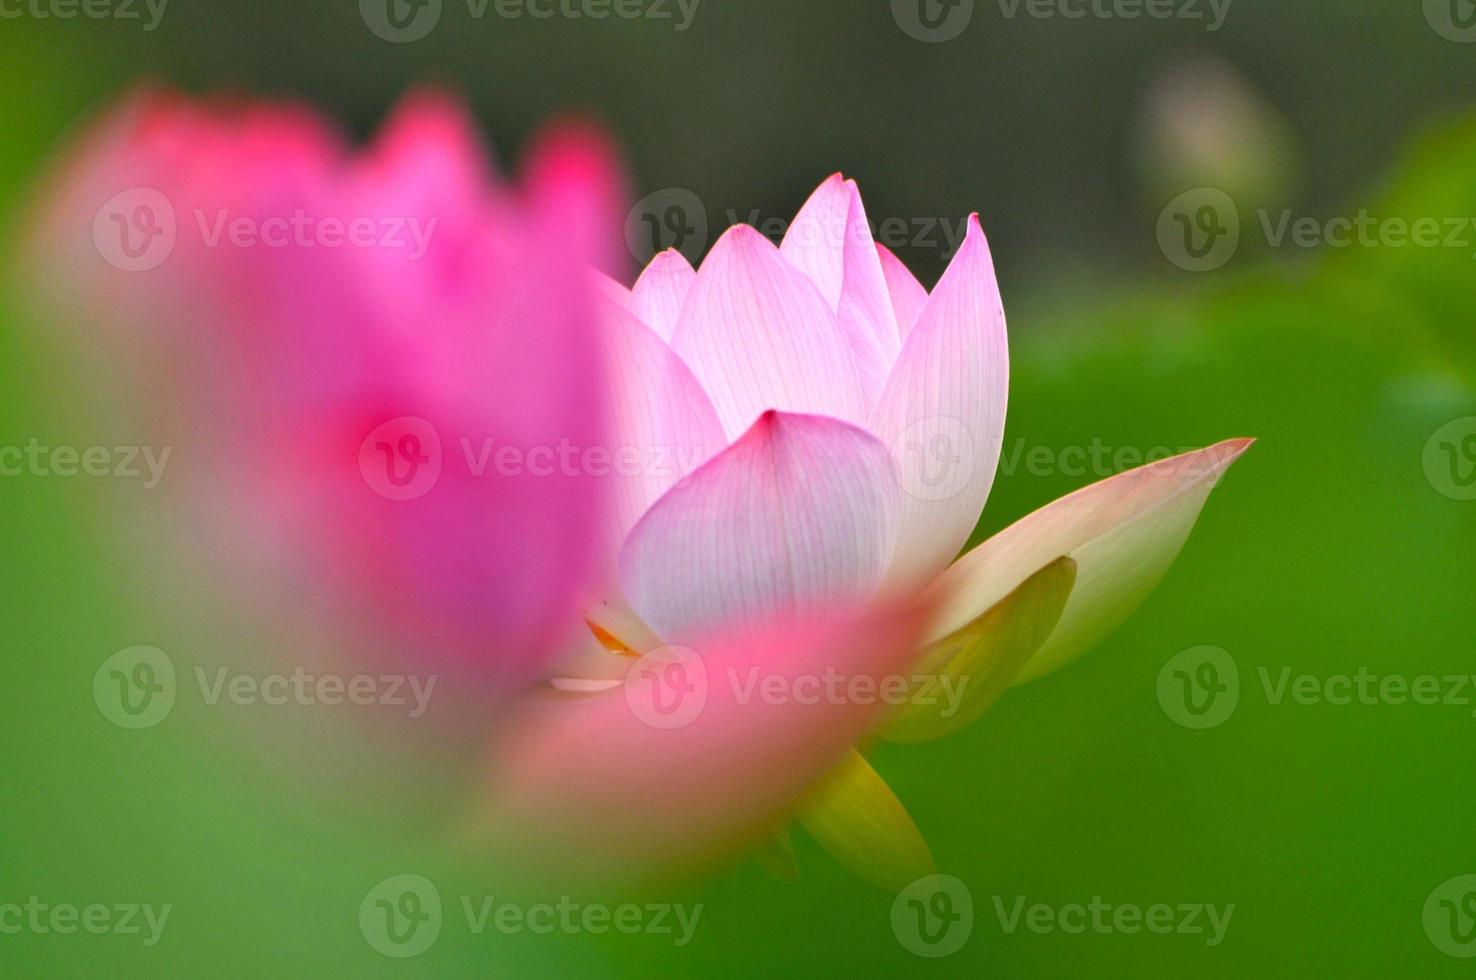 flor de lótus rosa foto